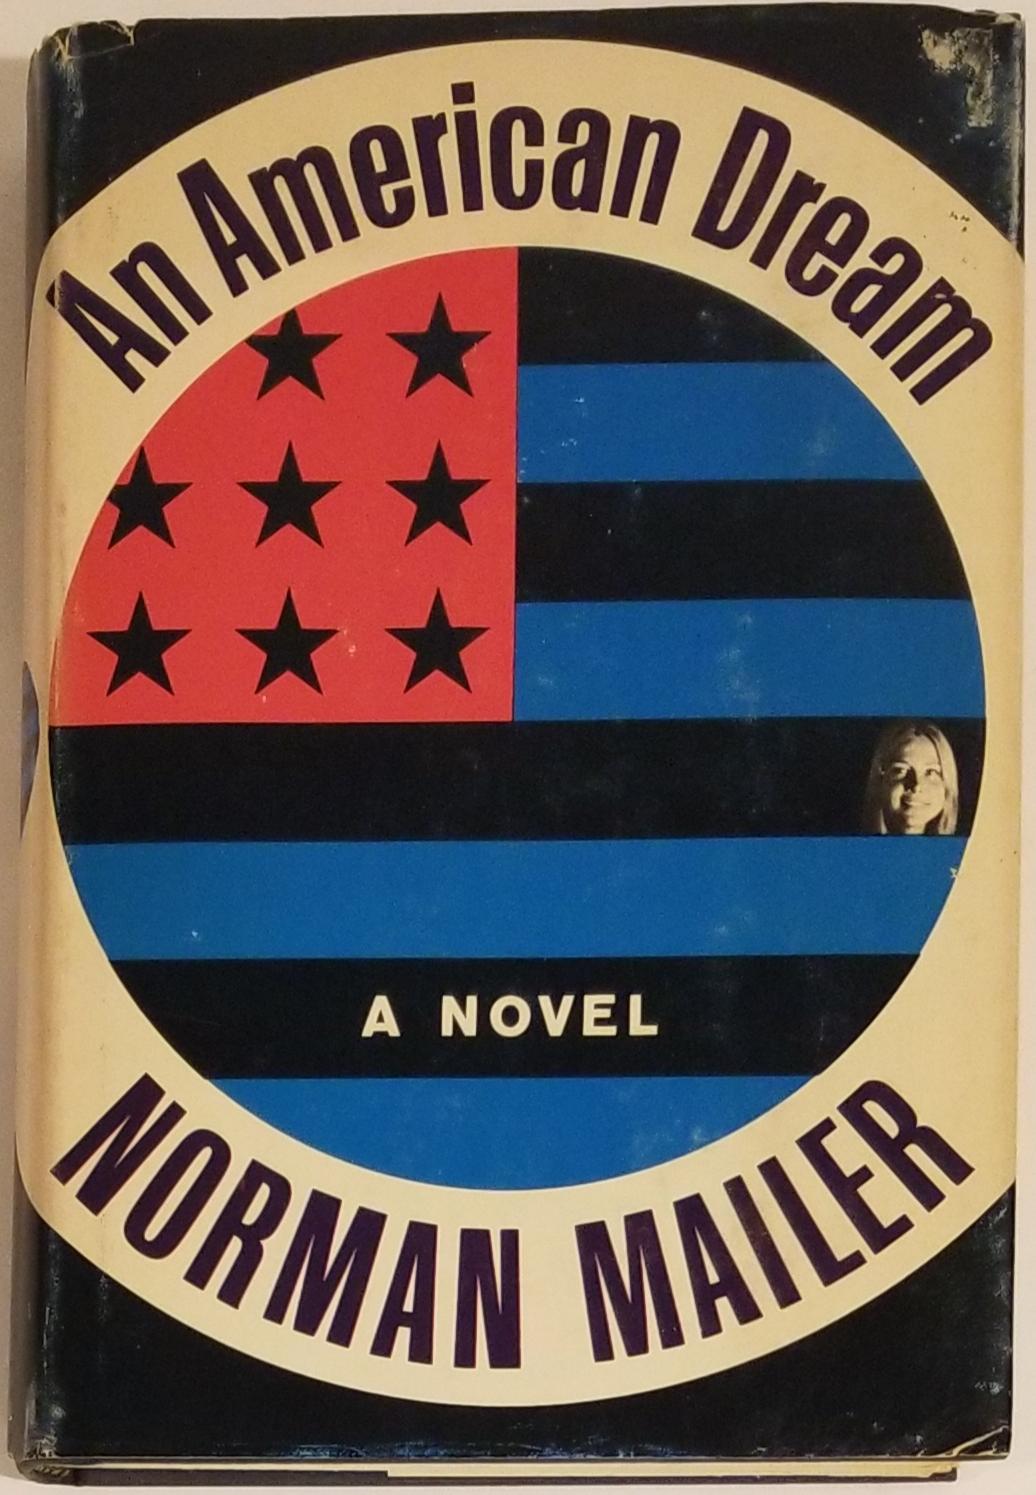 Histoire de la Couverture: le Mile High City sur Norman Mailer, " des Cannibales et des Chrétiens 1966